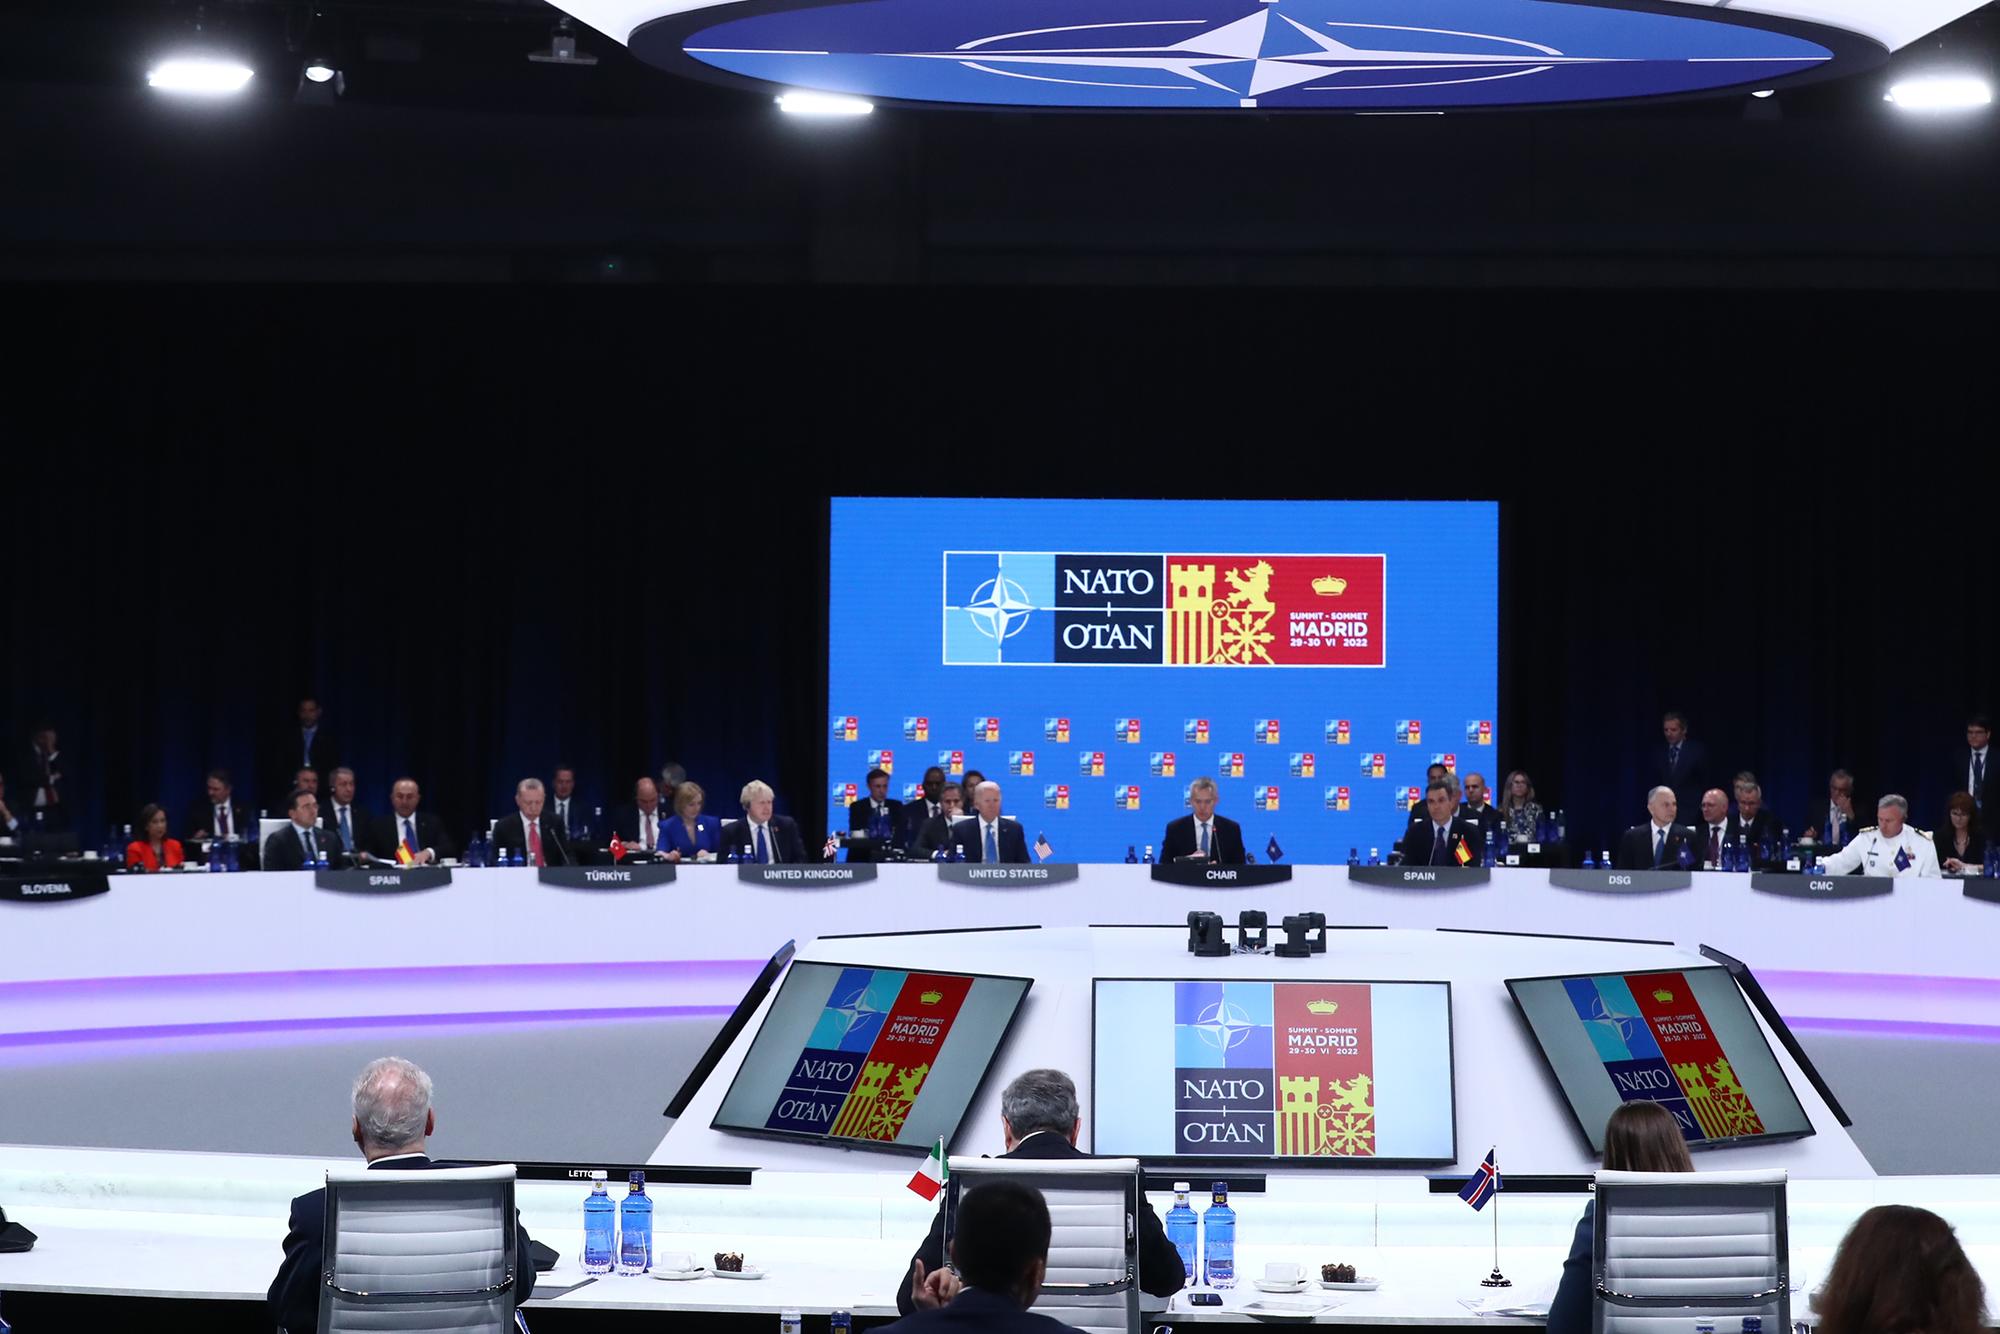 Cumbre de la OTAN Madrid 2022 Ifema - 4